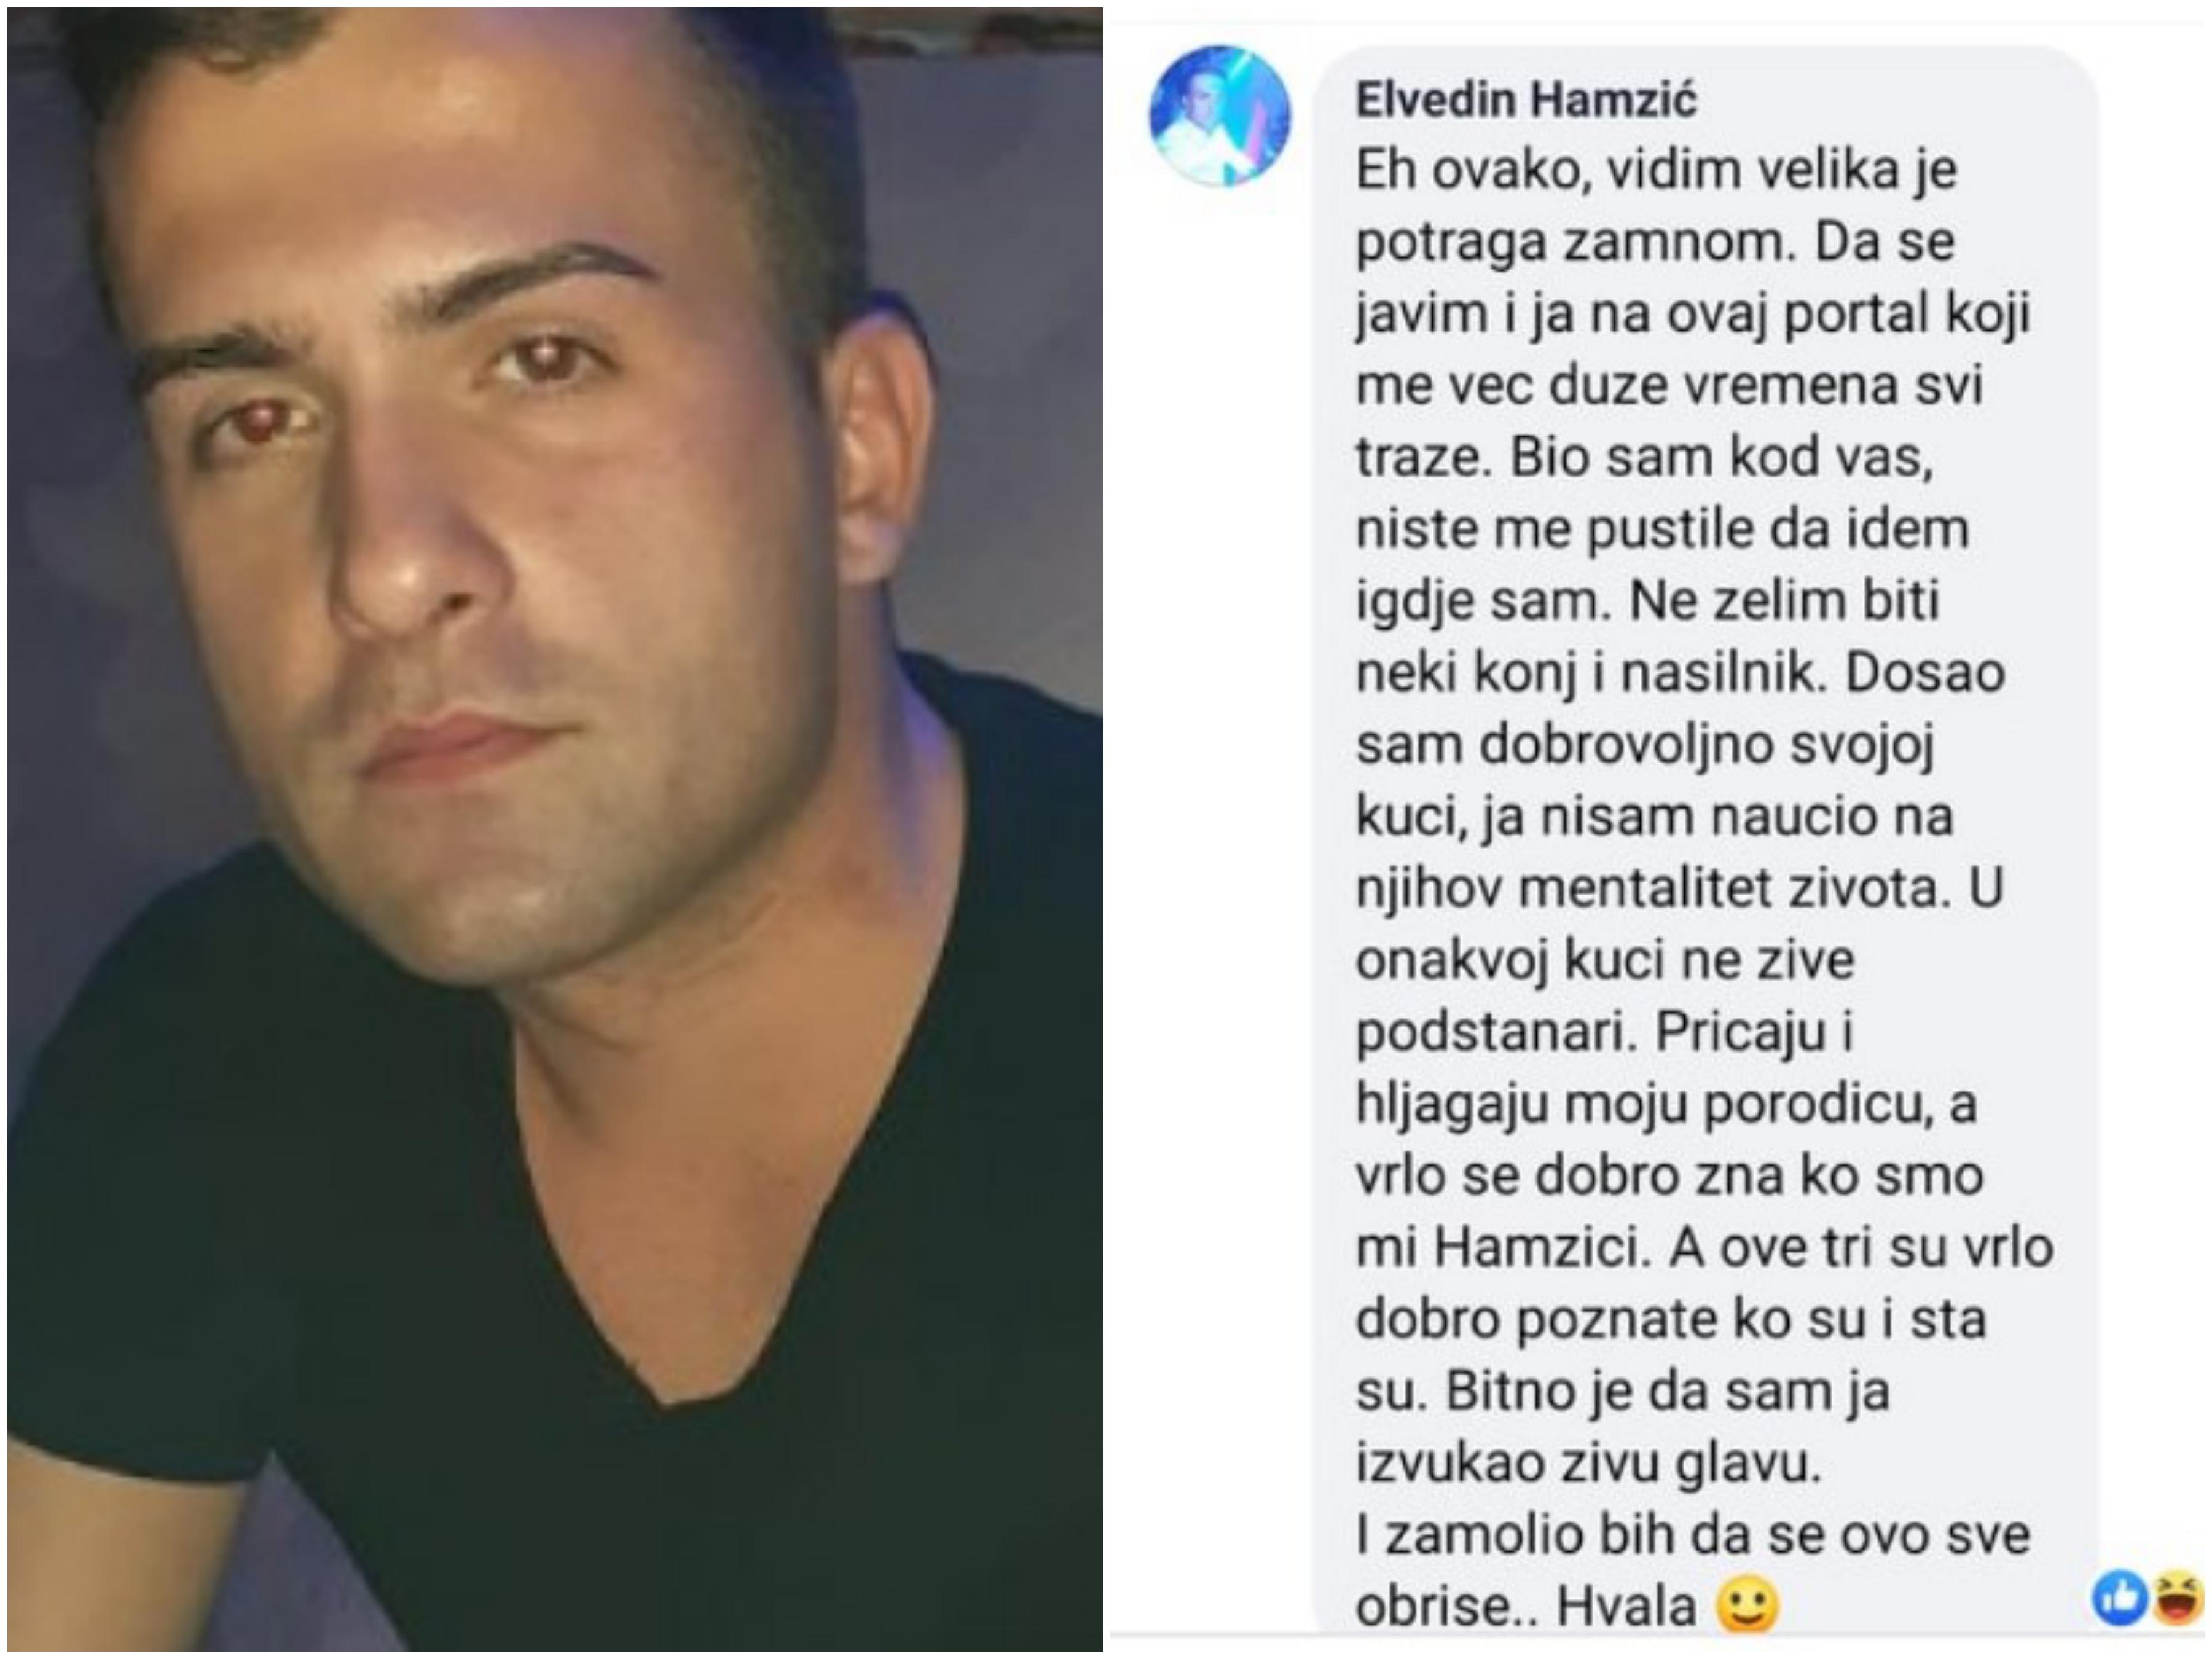 Konačno se oglasio Elvedin Hamzić, kojeg su otele djevojke: Izvukao sam živu glavu